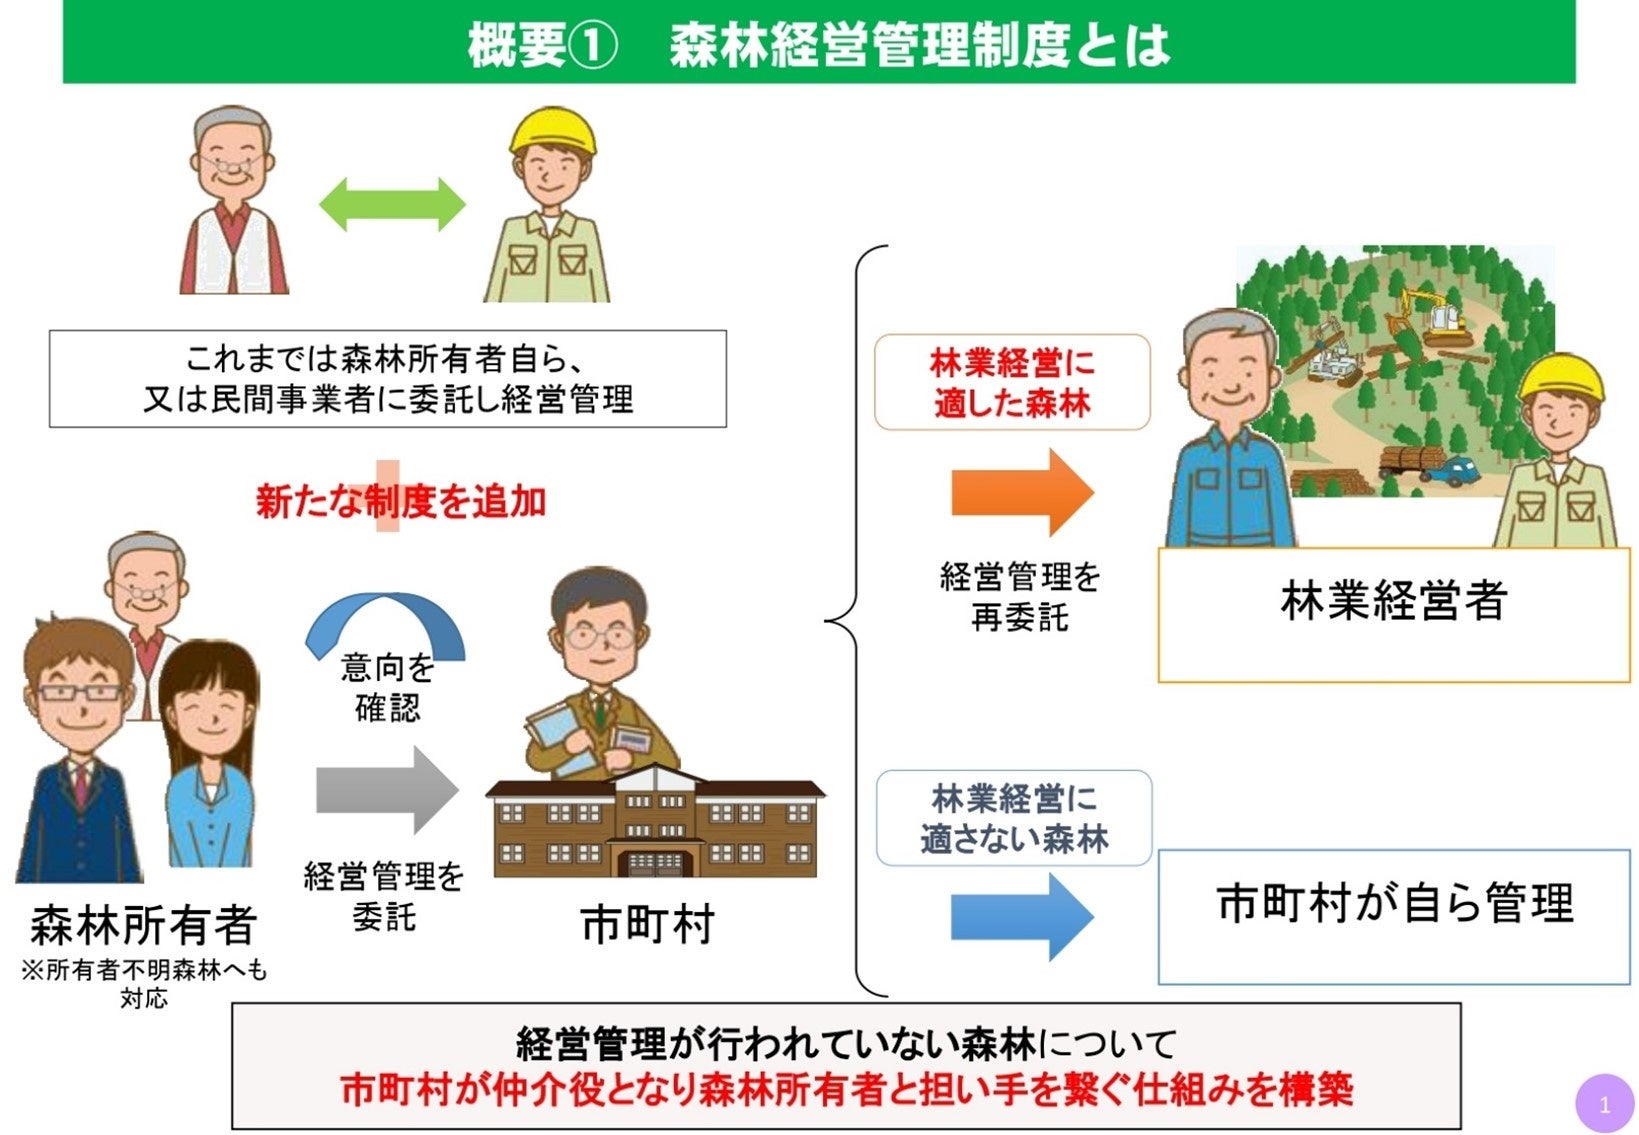 福井県内の森林・林業行政をサポートする「一般社団法人やましごと工房ふくい」を設立のサブ画像2